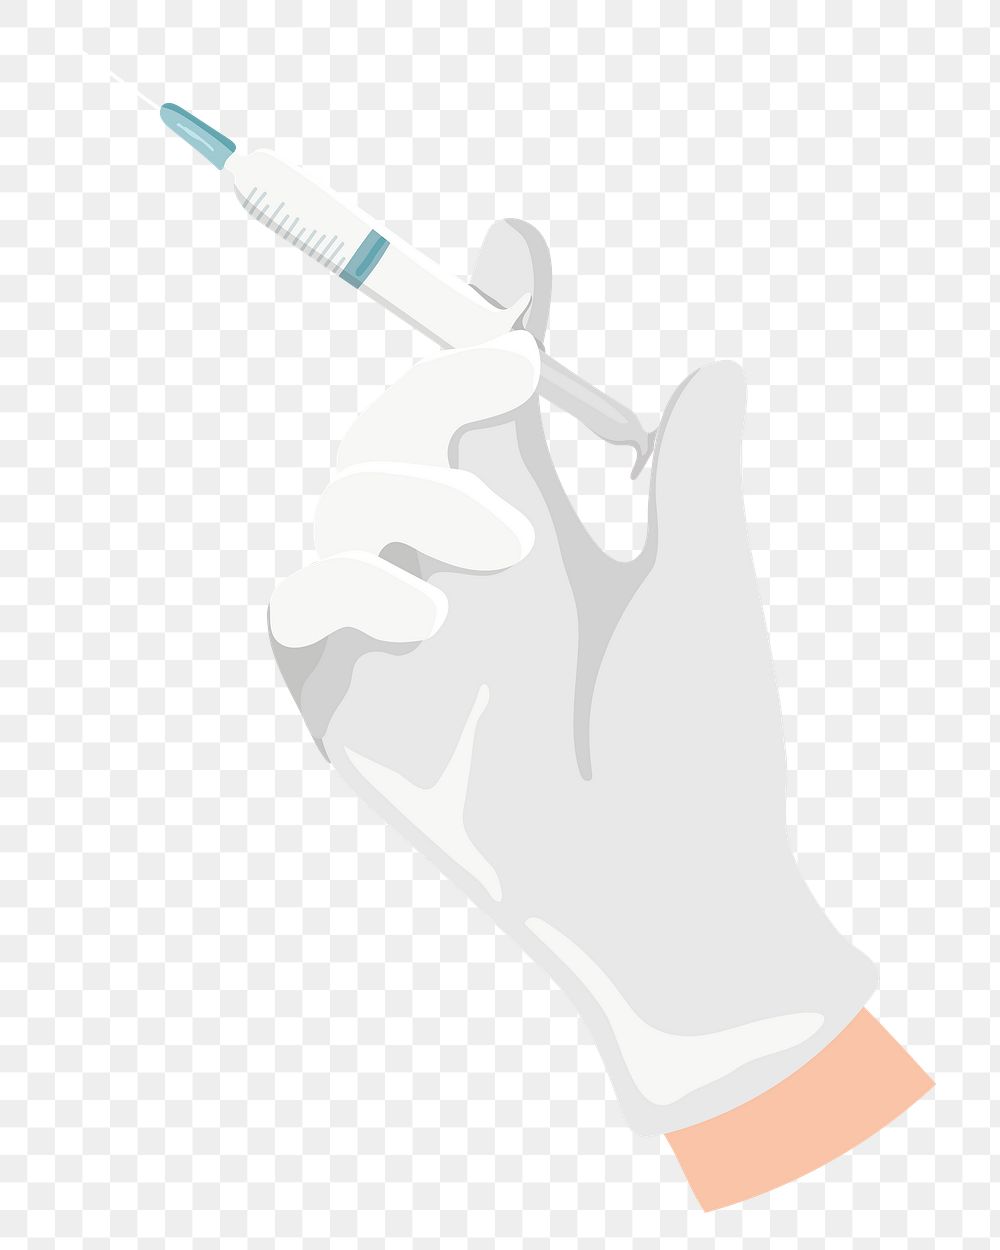 Medical syringe png illustration sticker, transparent background